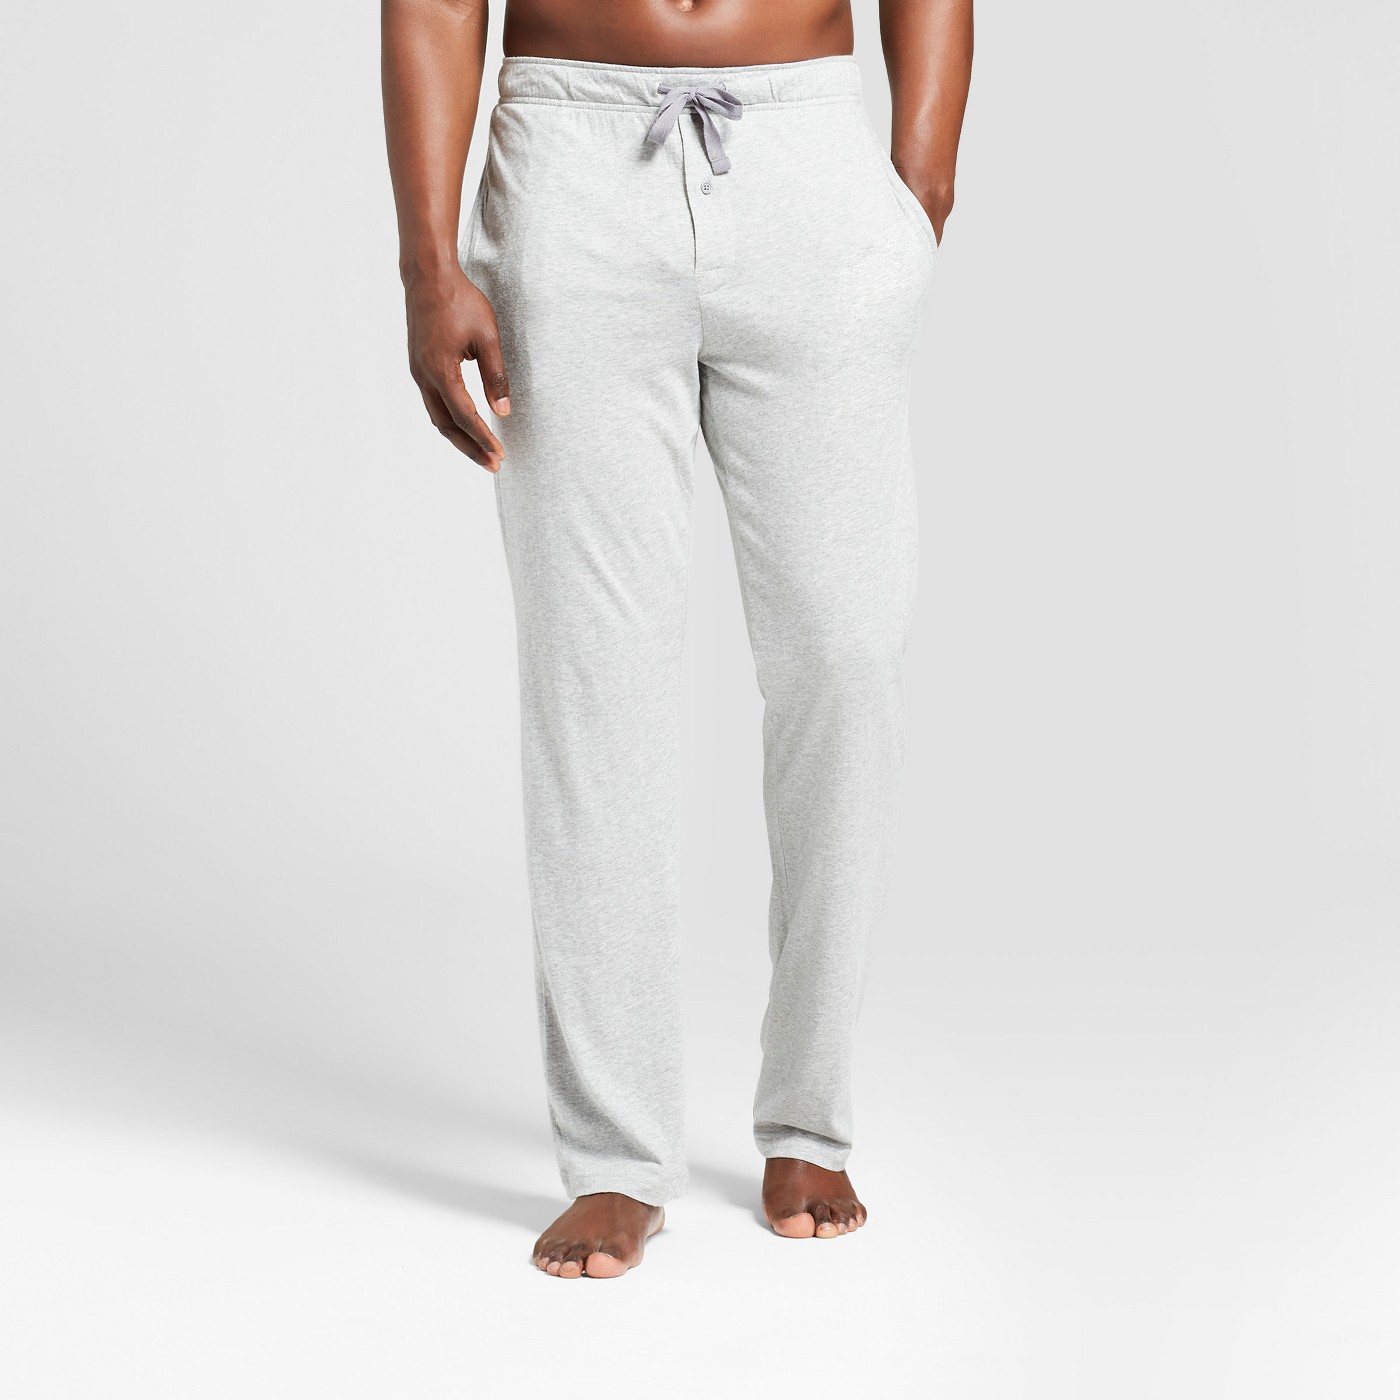 Men's Knit Pajama Pants - Goodfellow & Coâ¢ - image 1 of 2